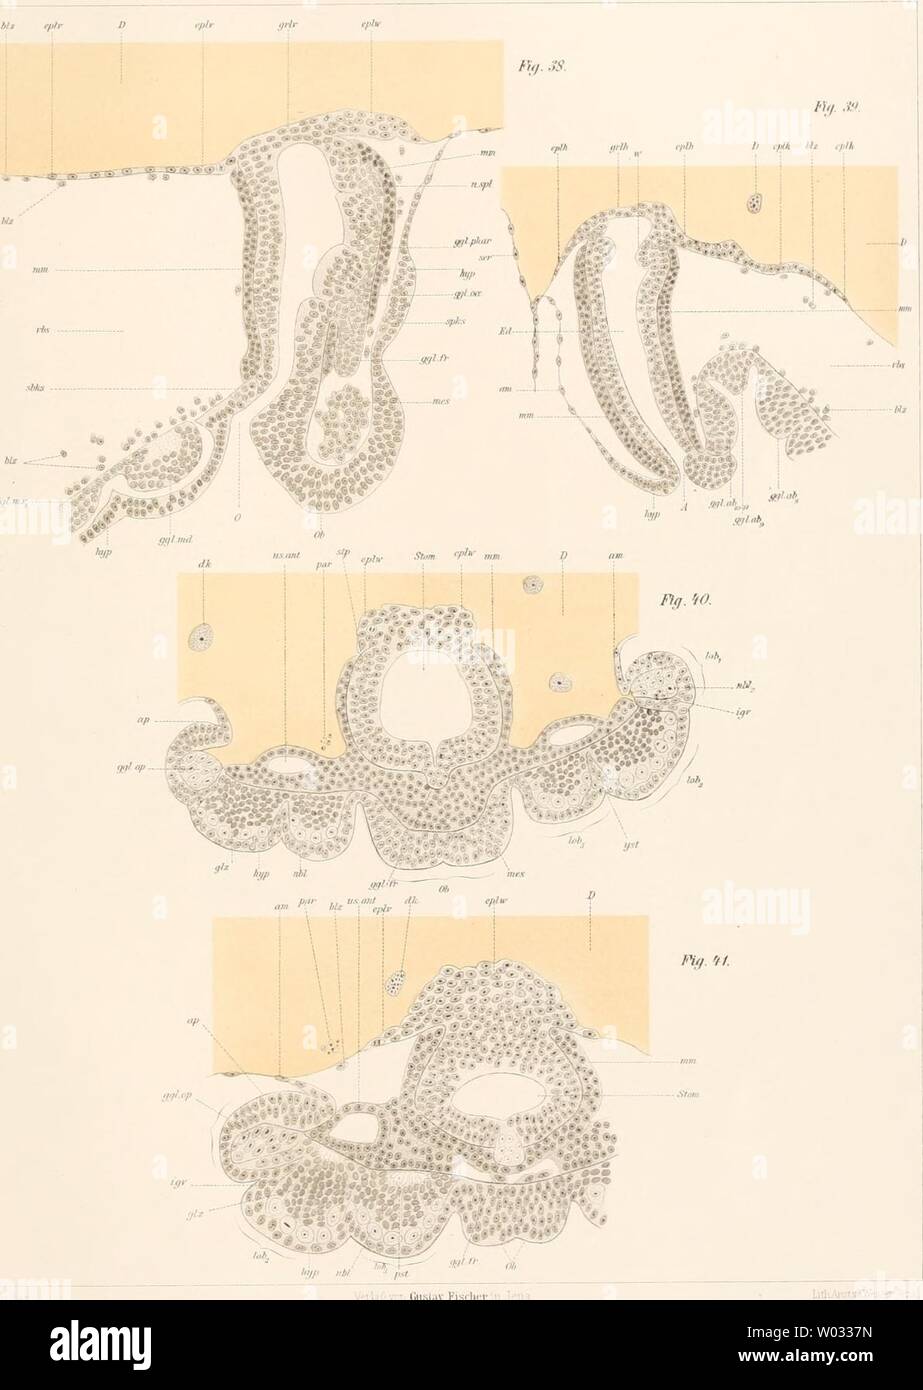 Archive image from page 170 of Die Embryonalentwickelung von Dermapteren und Stock Photo